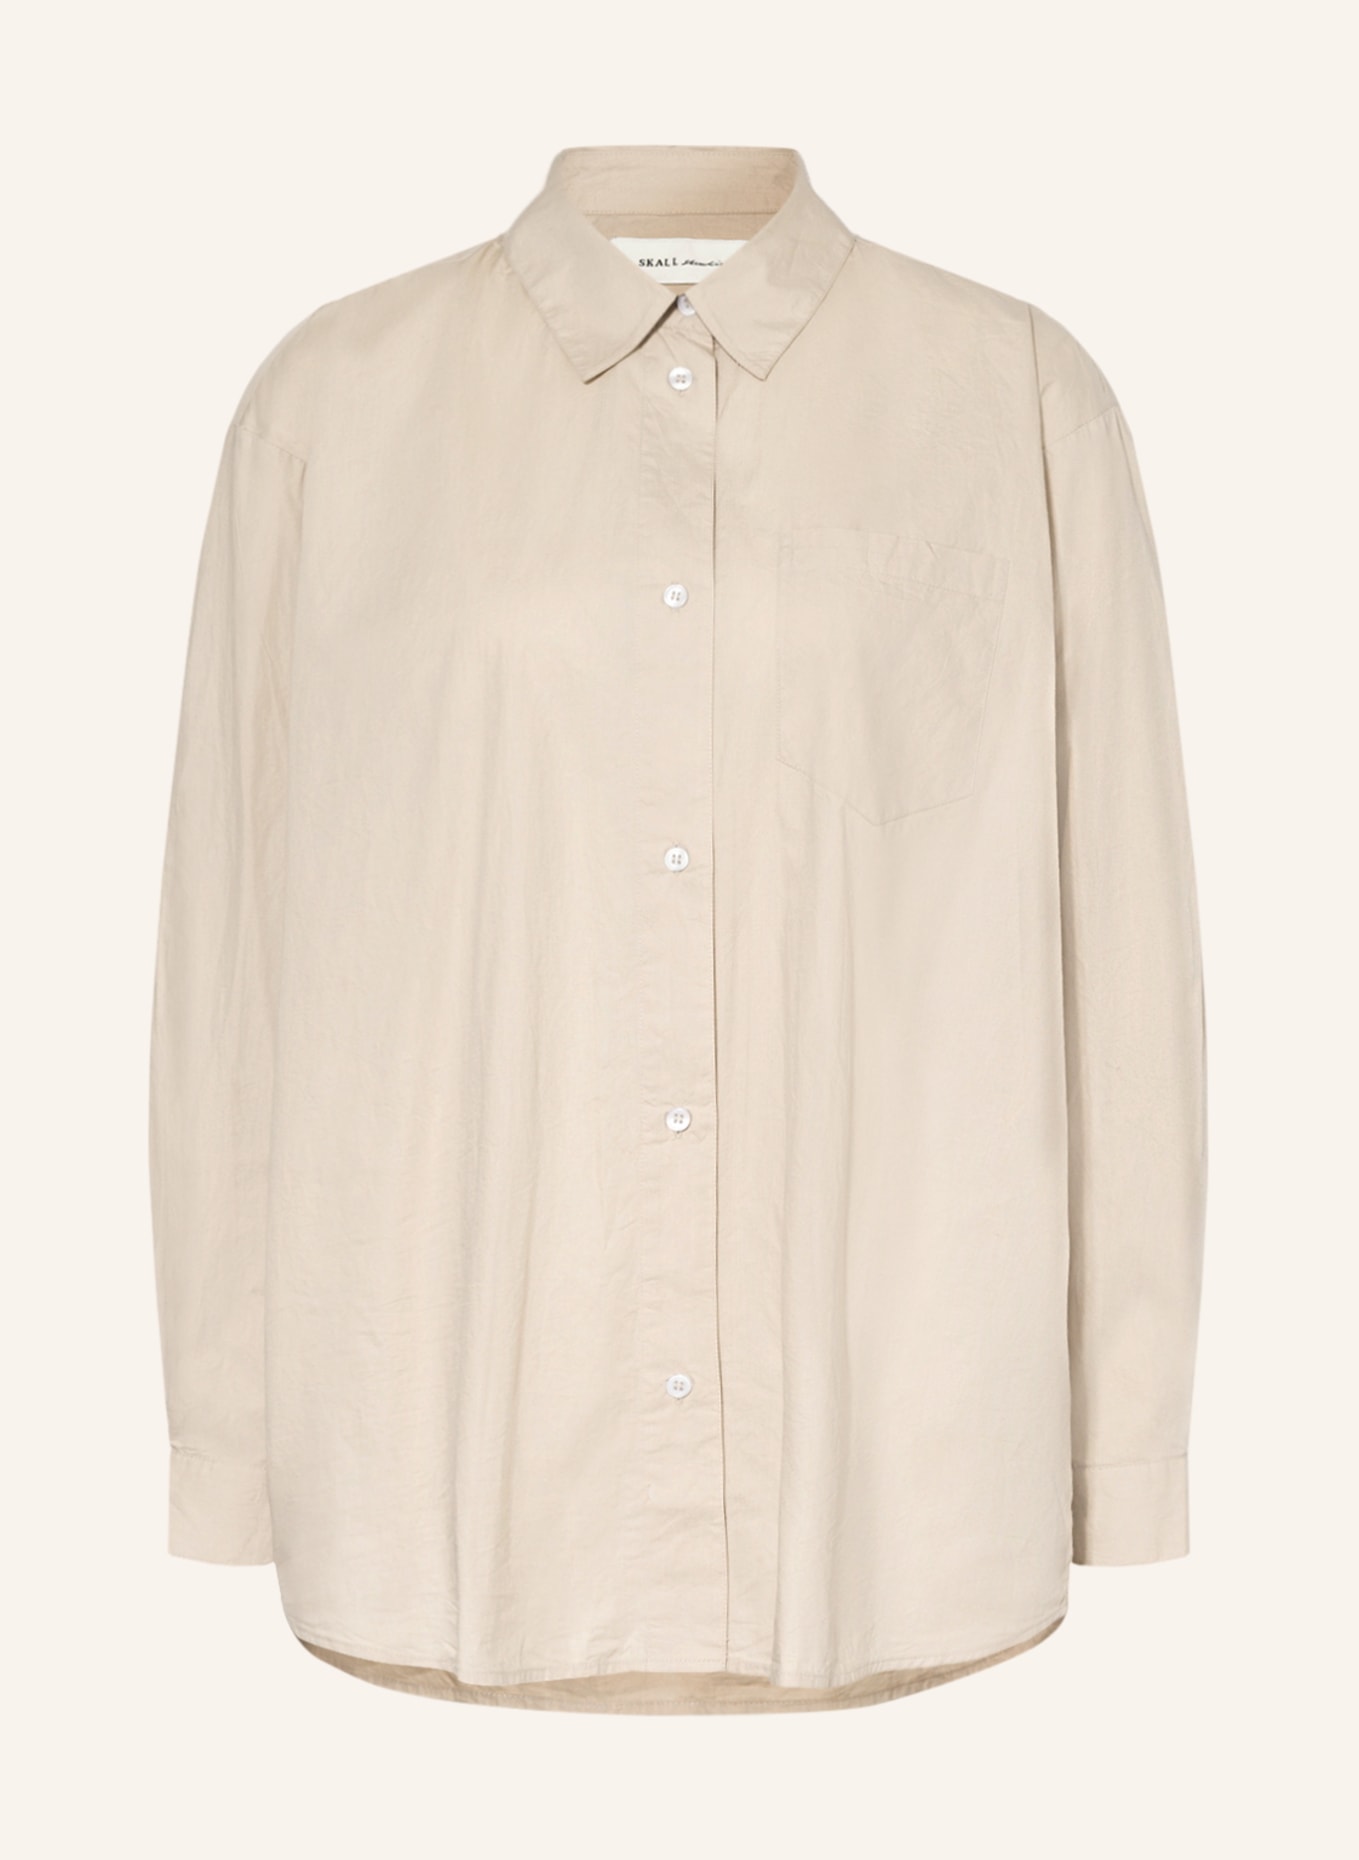 Skall Studio Oversized shirt blouse EDGAR, Color: BEIGE (Image 1)